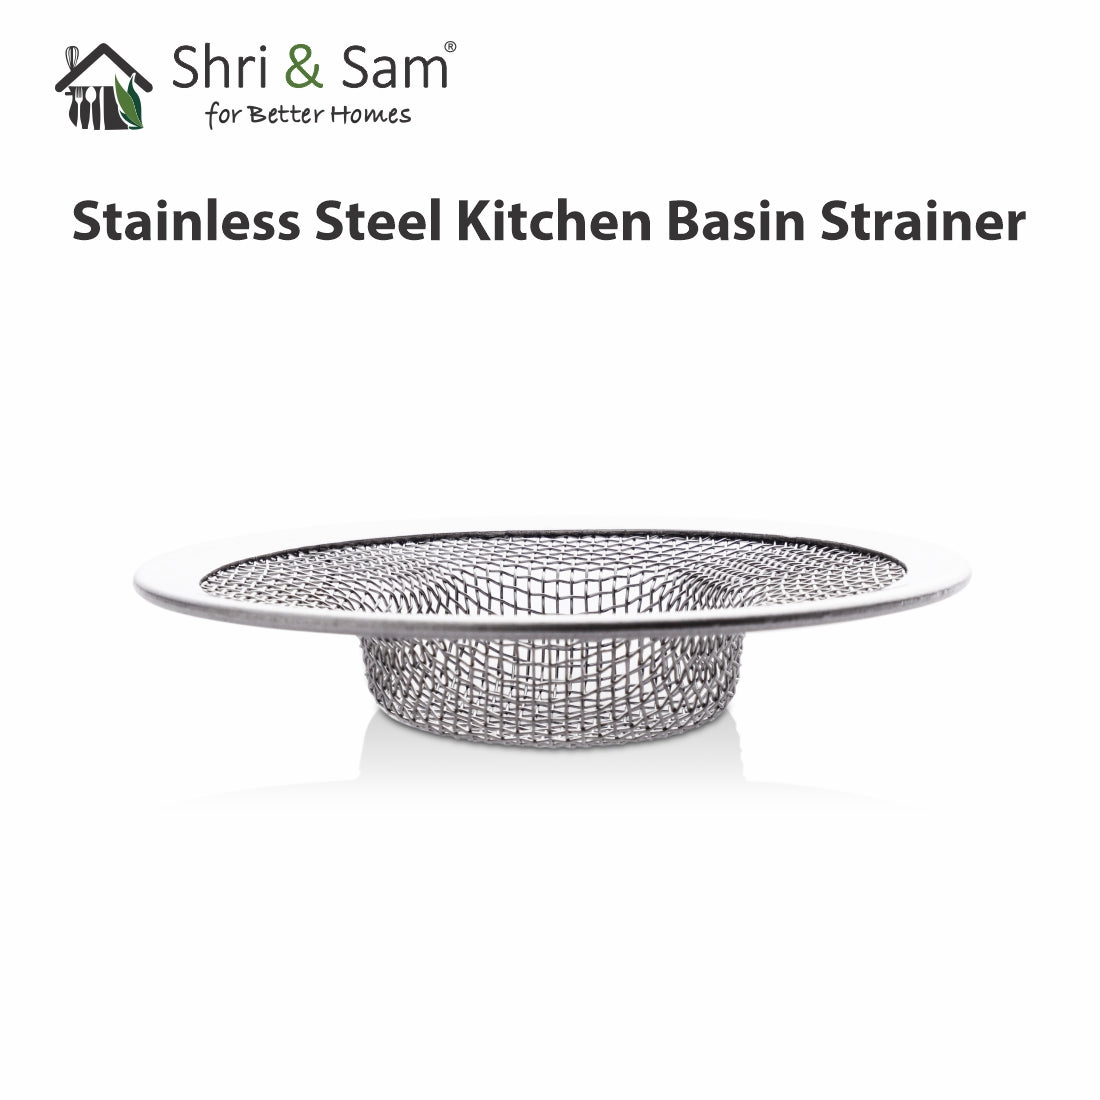 Stainless Steel Kitchen Basin Strainer